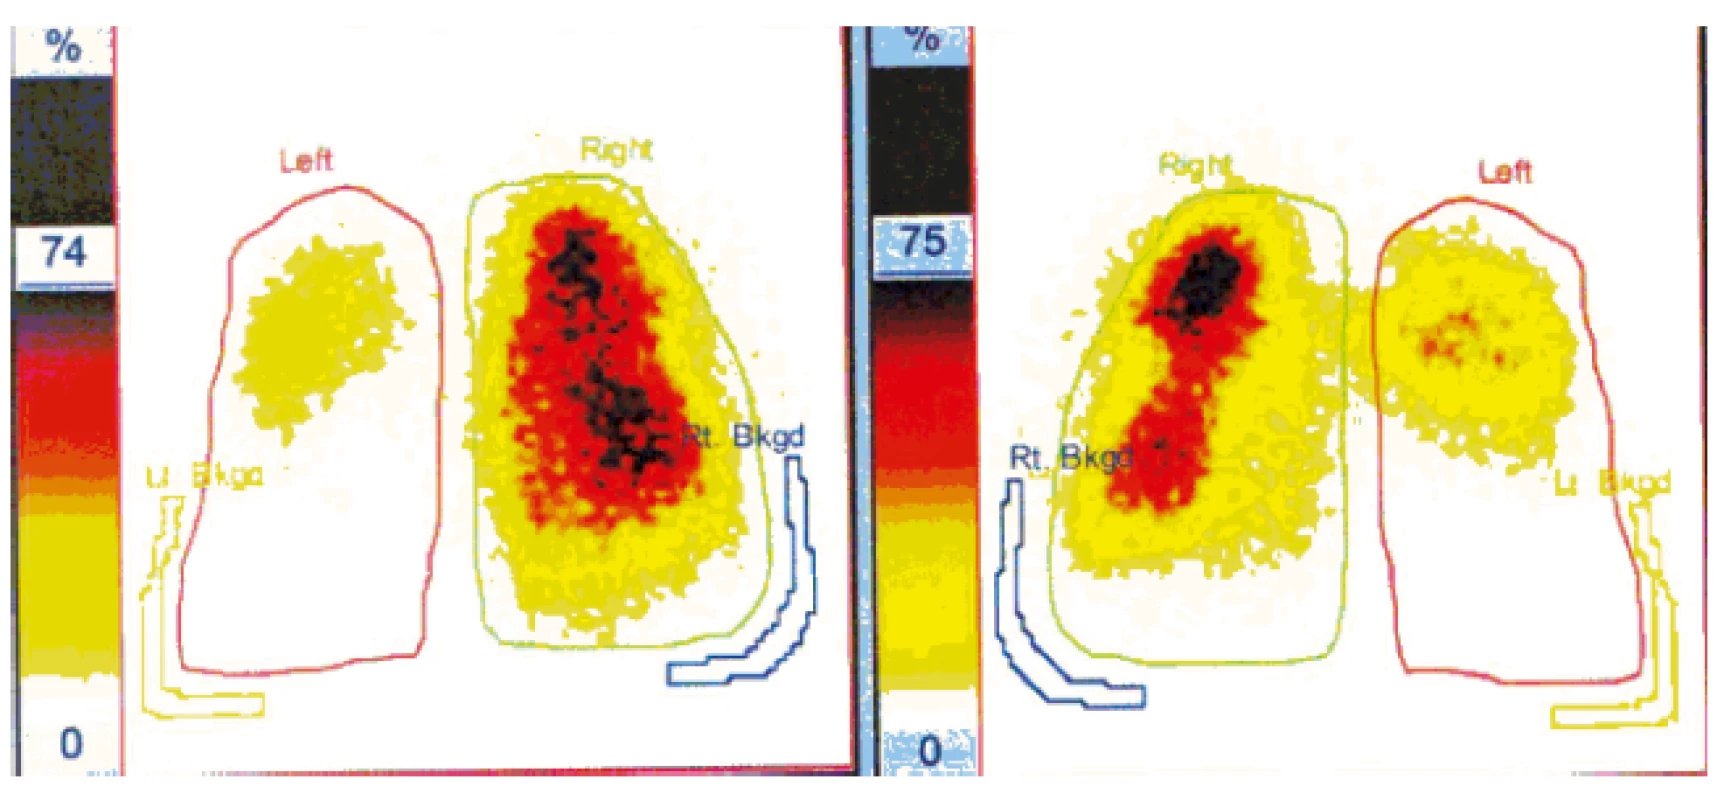 Scintigrafie plic, SPECT. Bilaterální plicní embolie: rozsáhlý defekt perfuze
v celém dolním laloku levé plíce a v části horního. Vpravo defekt v menším okrsku ve
středním laloku ventrálně